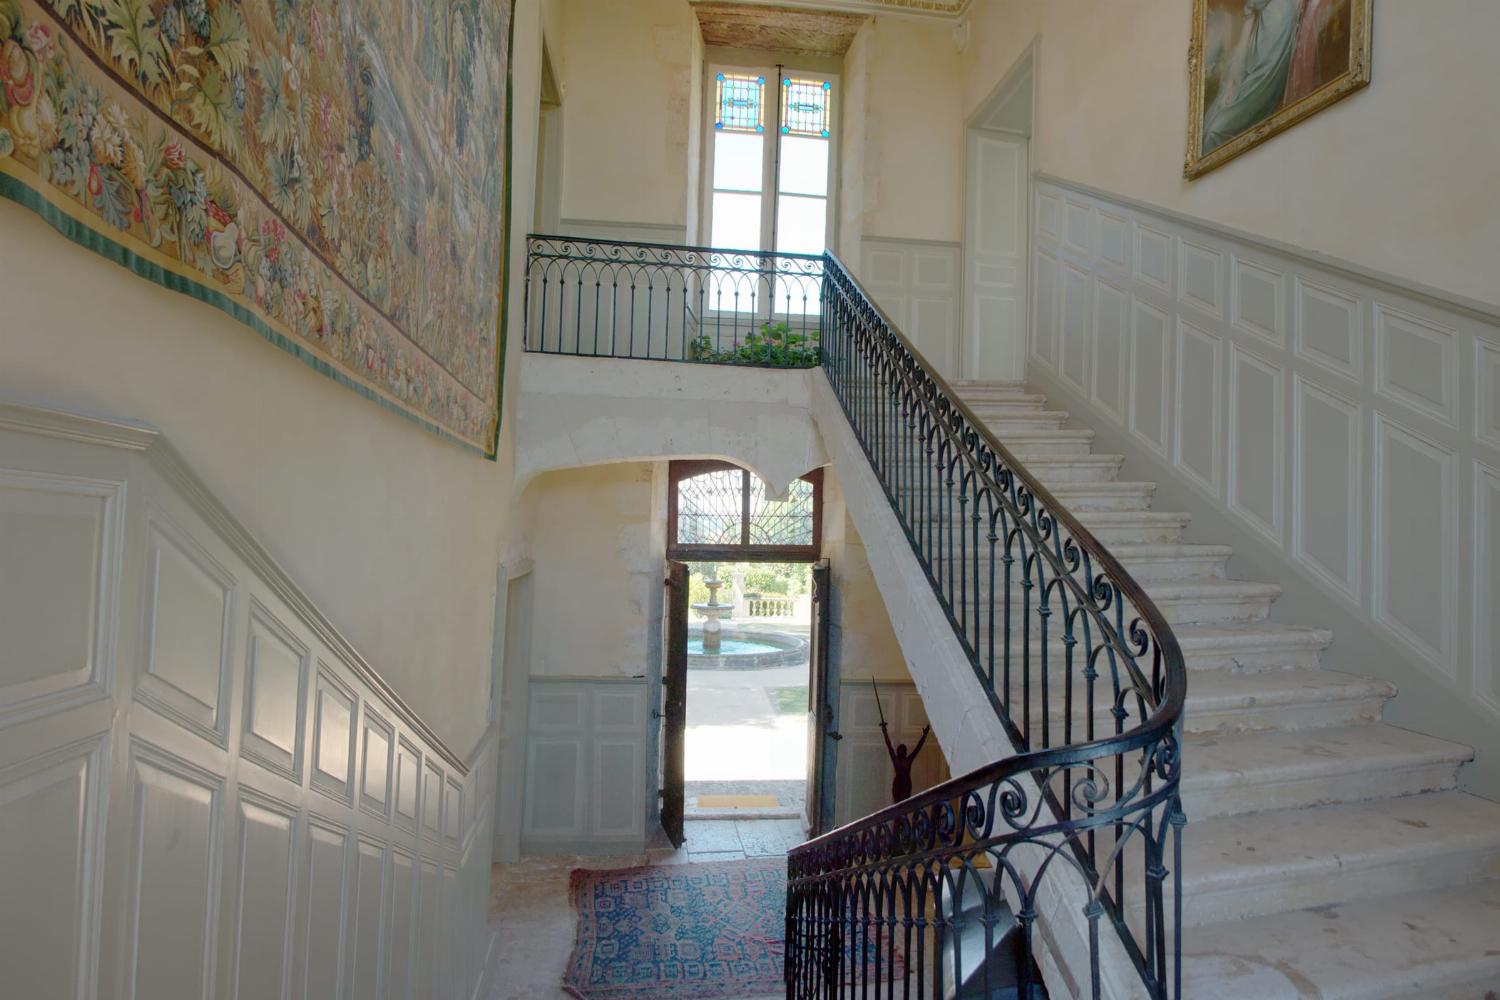 Escalier | Château de vacances dans le Gers